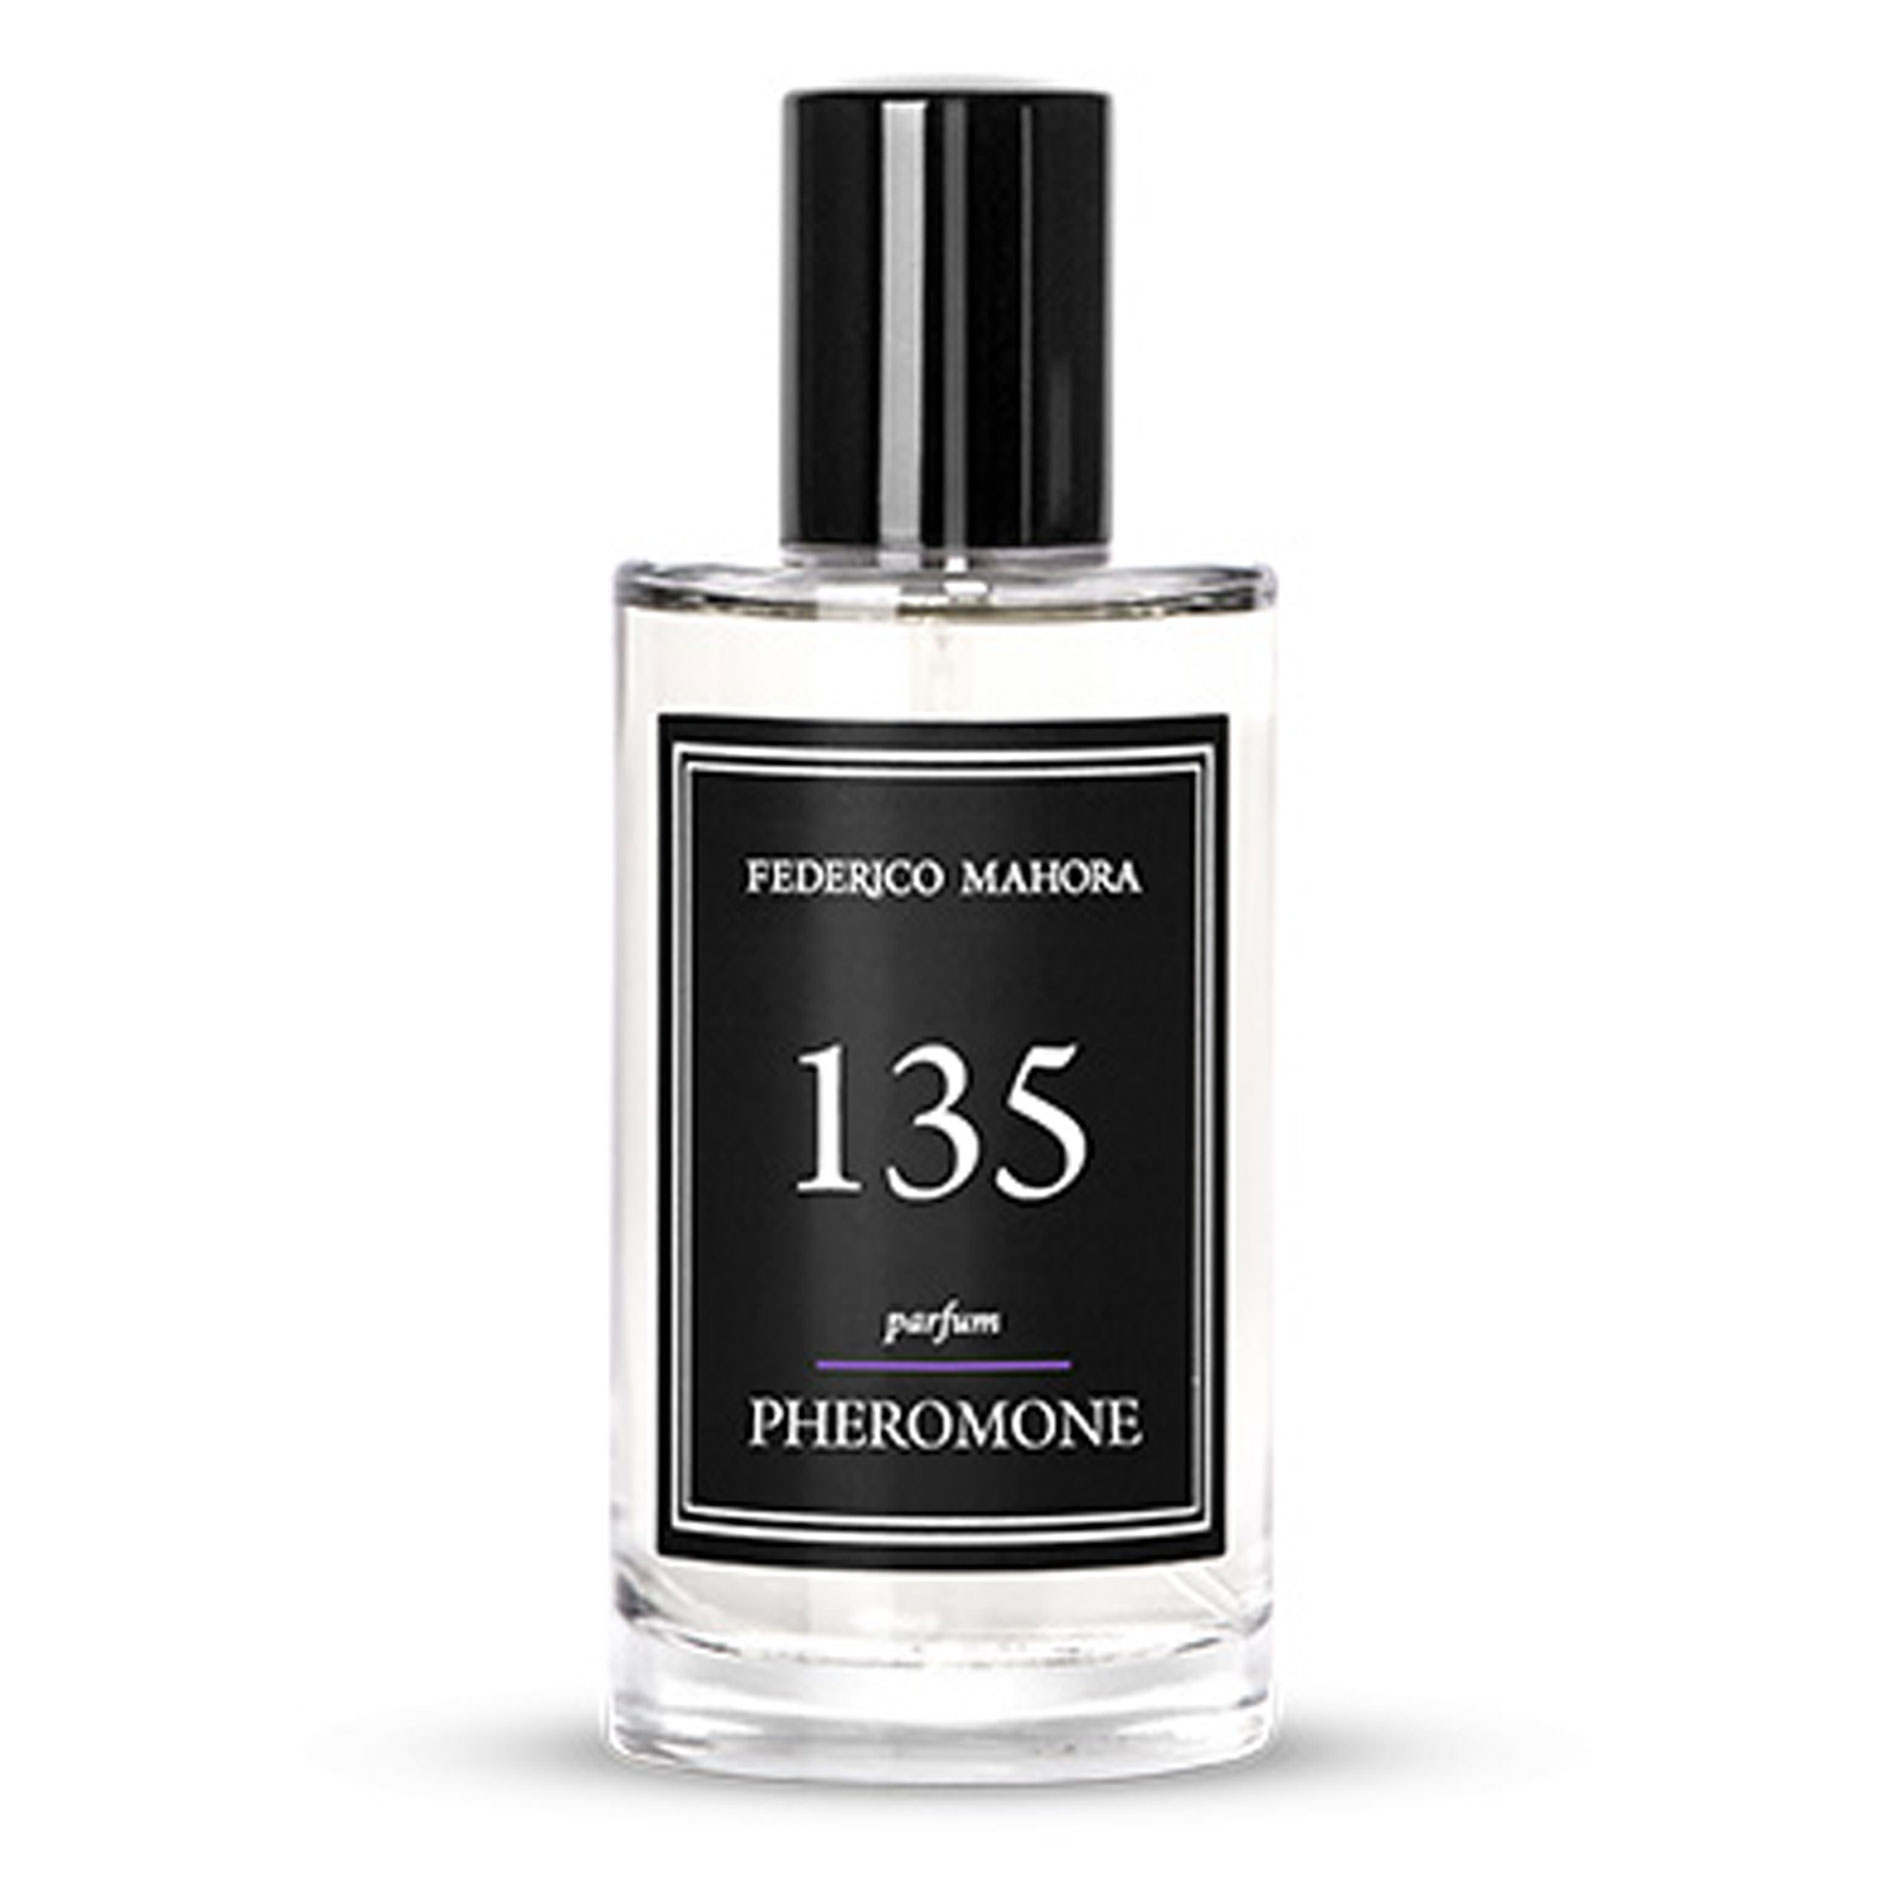 PURE 135 Parfum Pheromone Federico Mahora